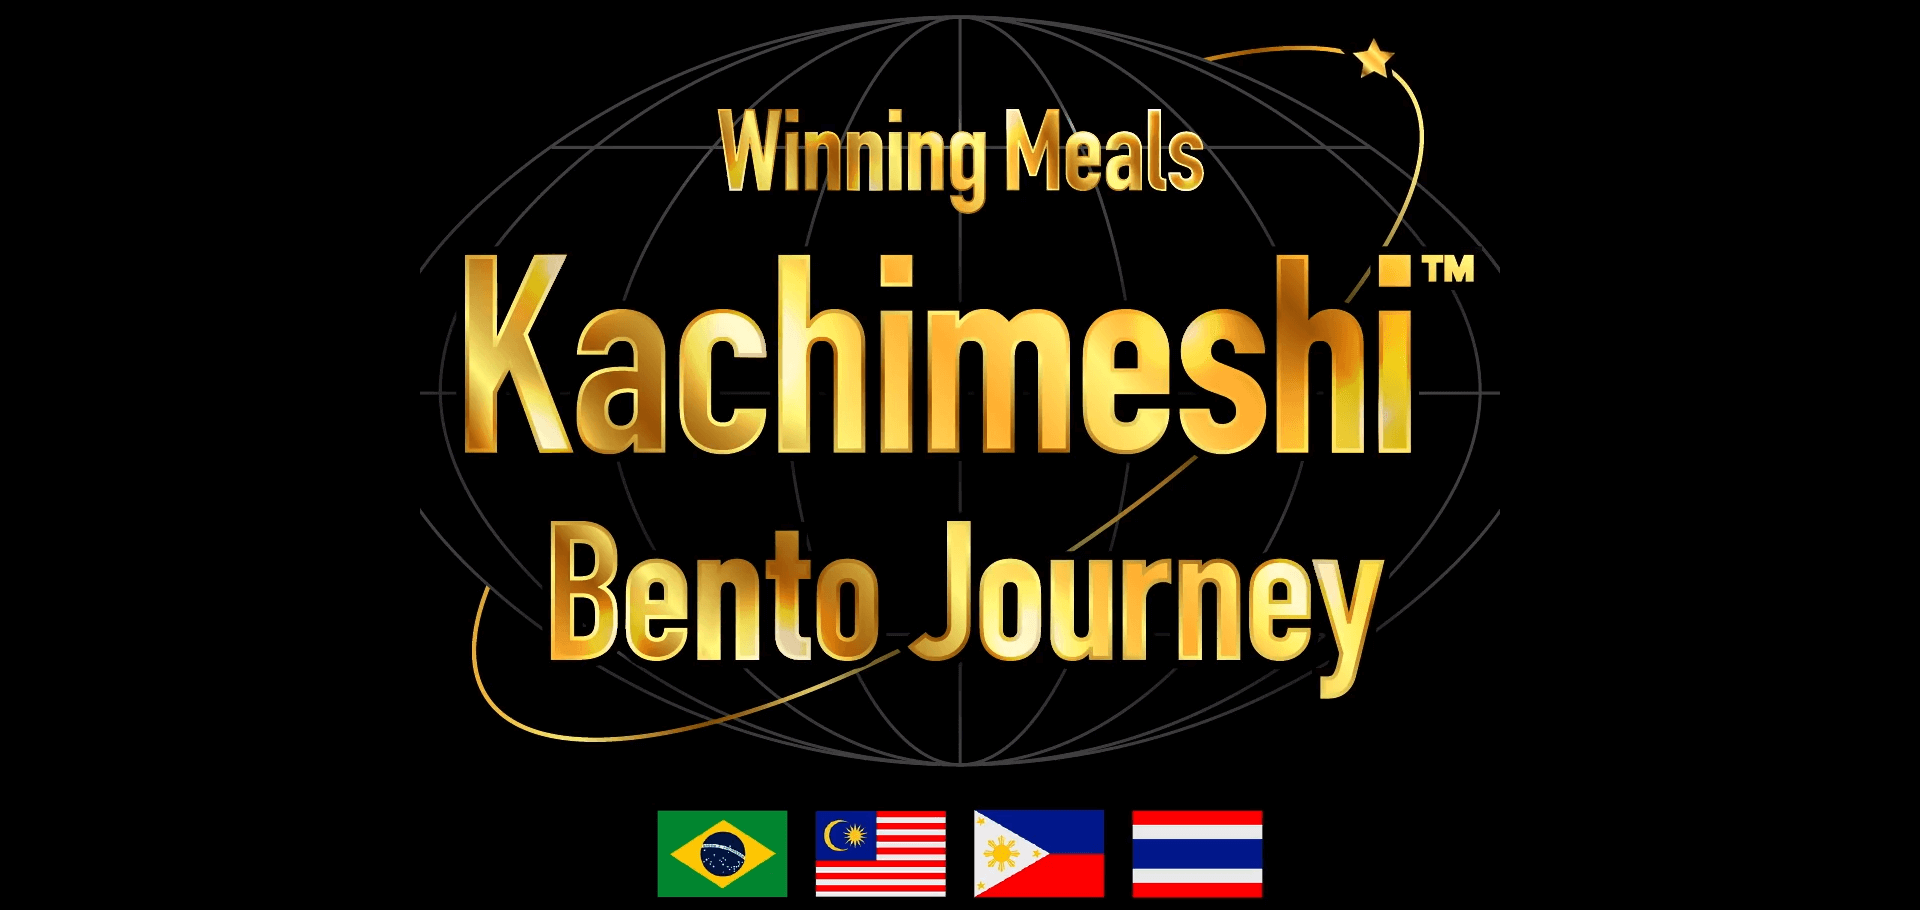 Repas gagnants Kachimeshi Bento Journey